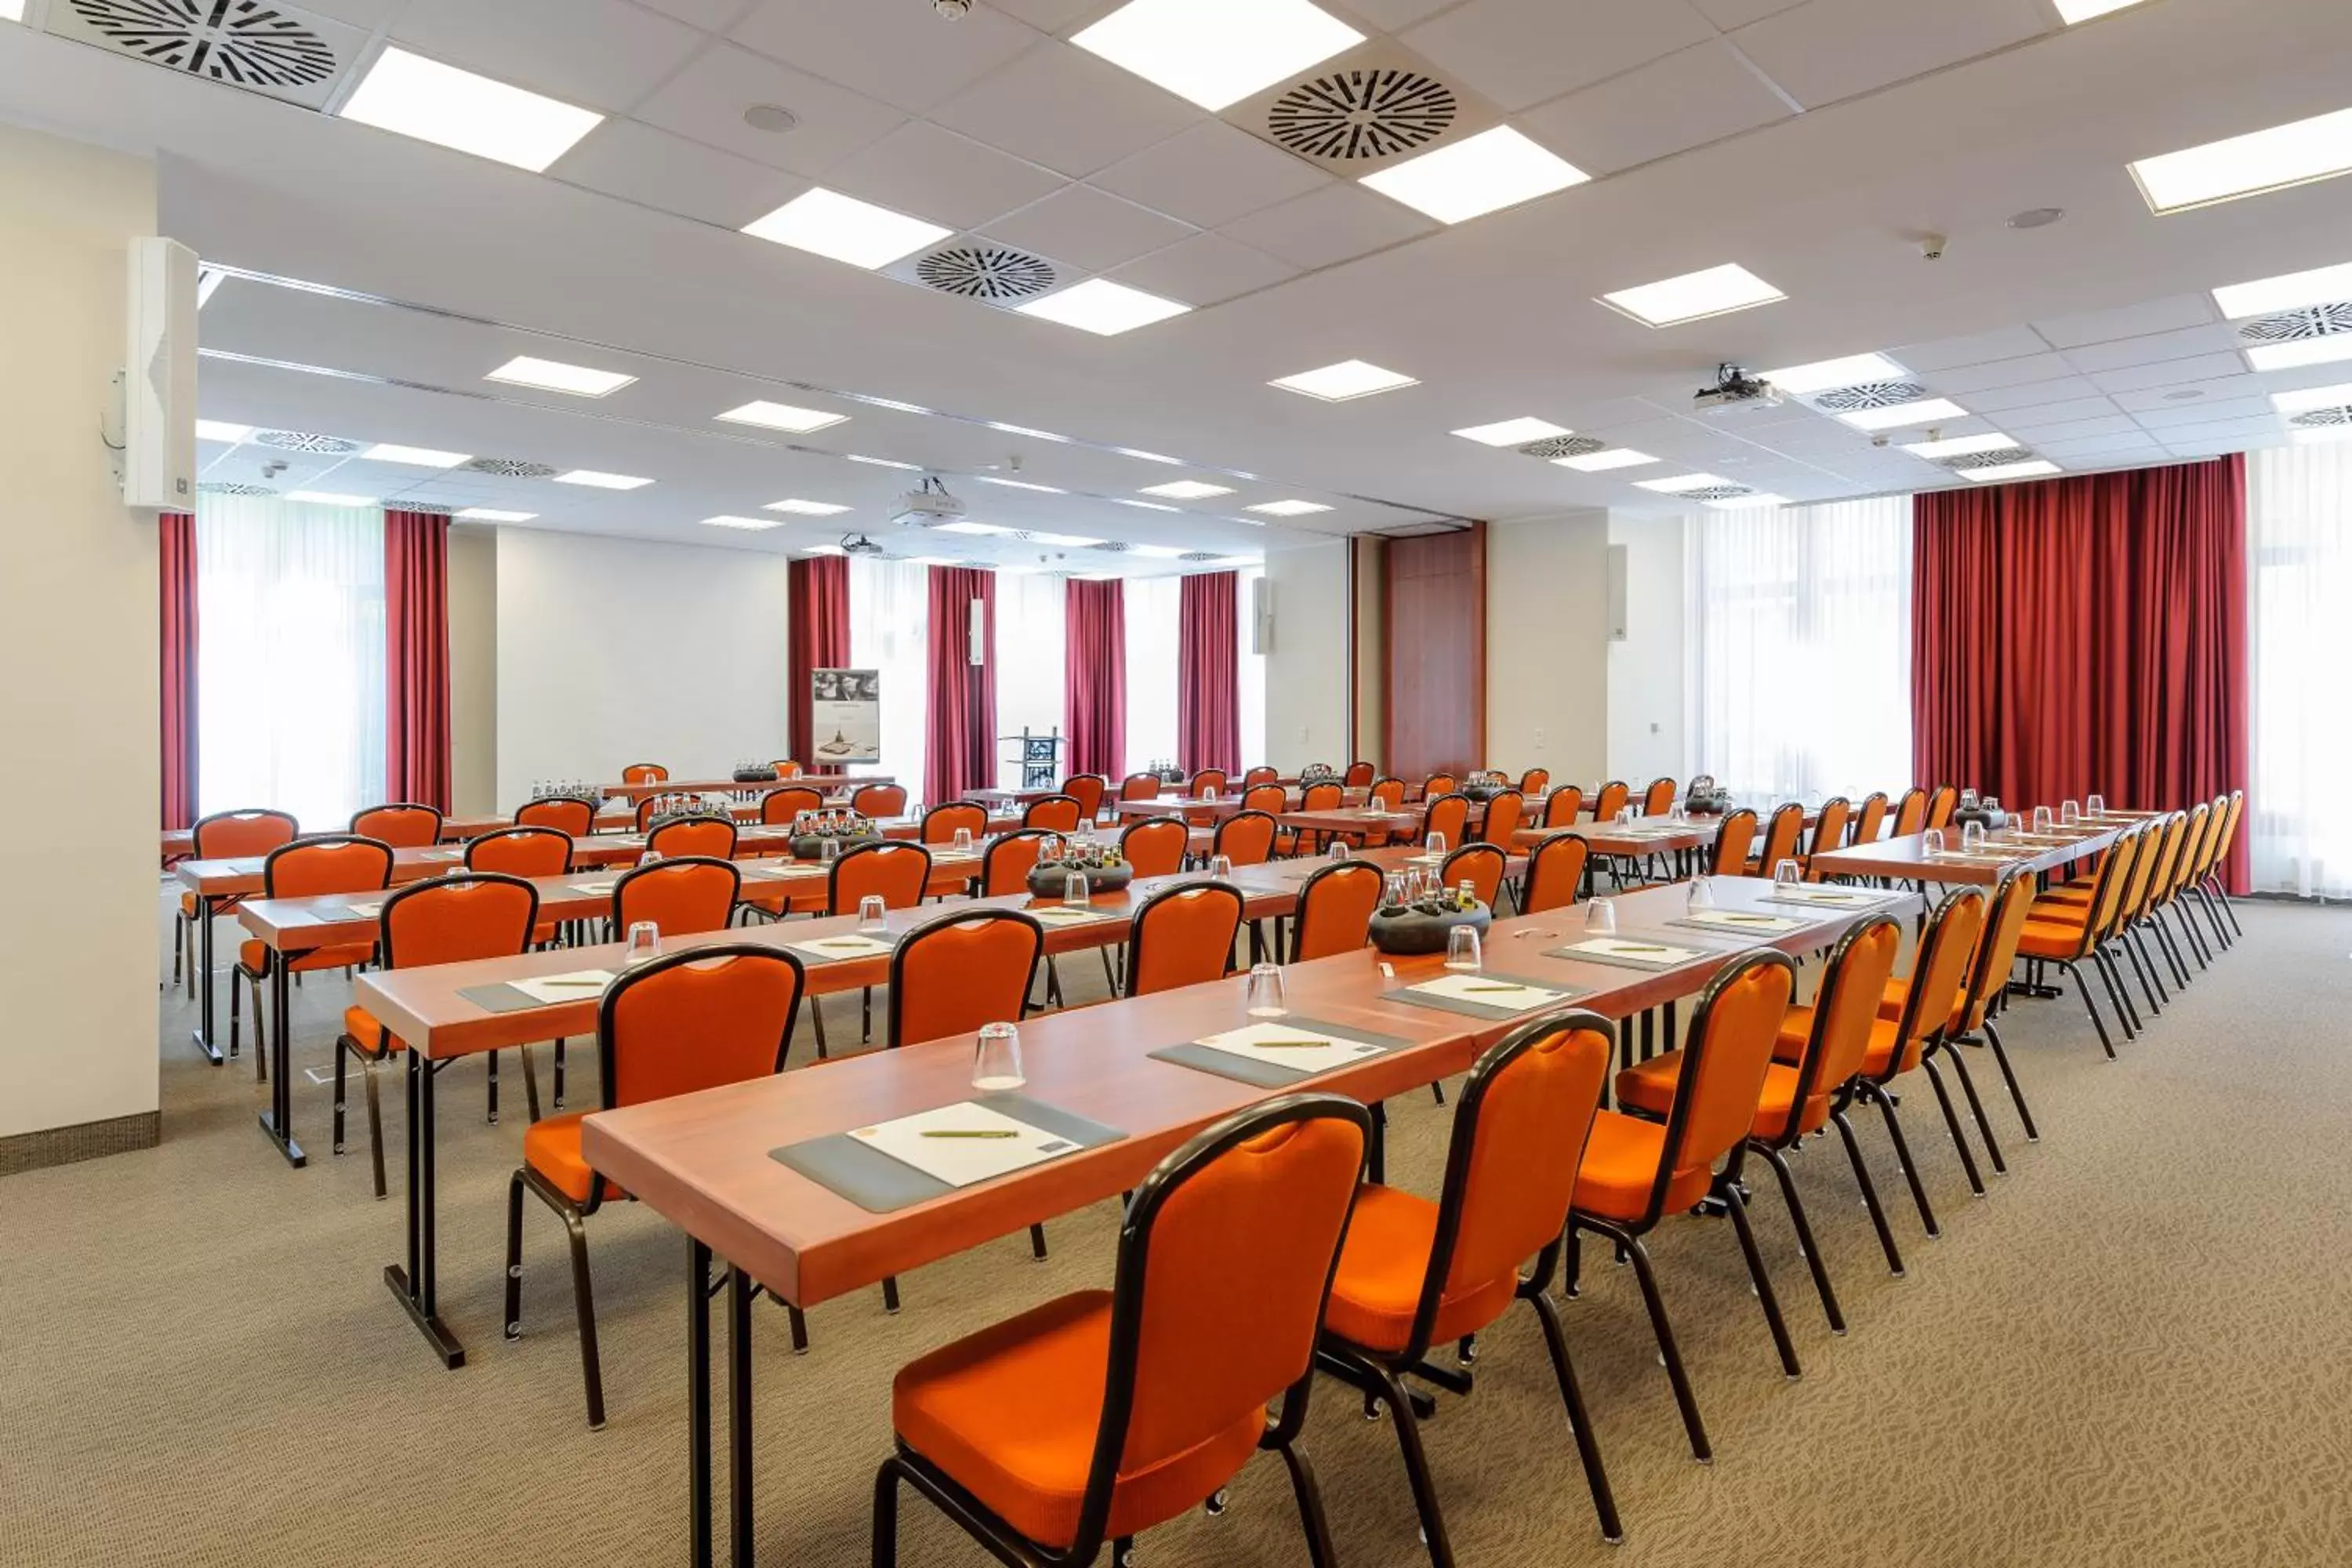 Meeting/conference room, Business Area/Conference Room in Mercure Hotel Erfurt Altstadt